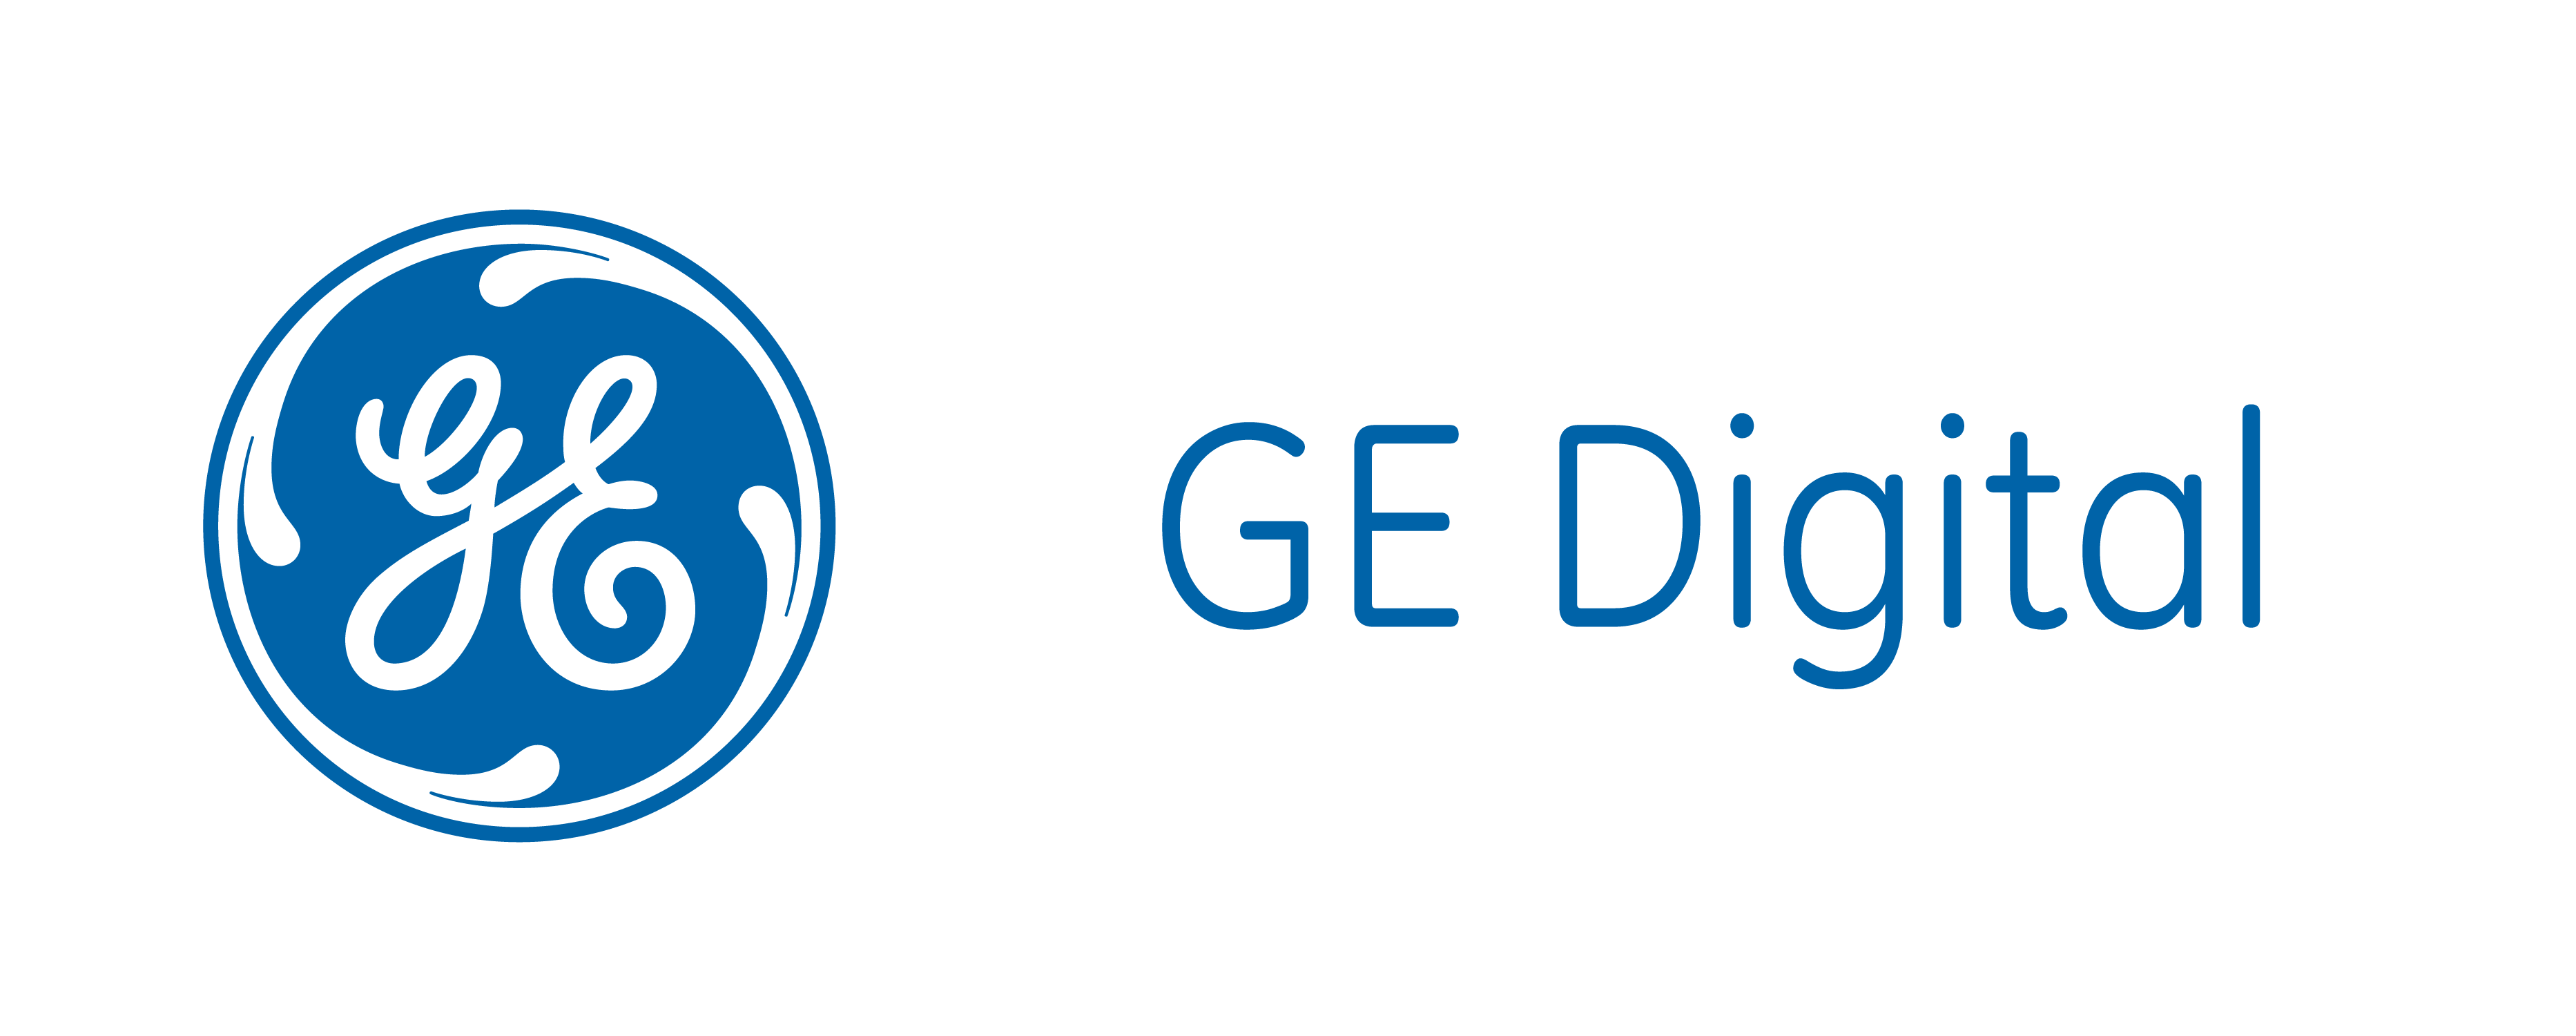 GE Digital Logo - Ge digital Logos